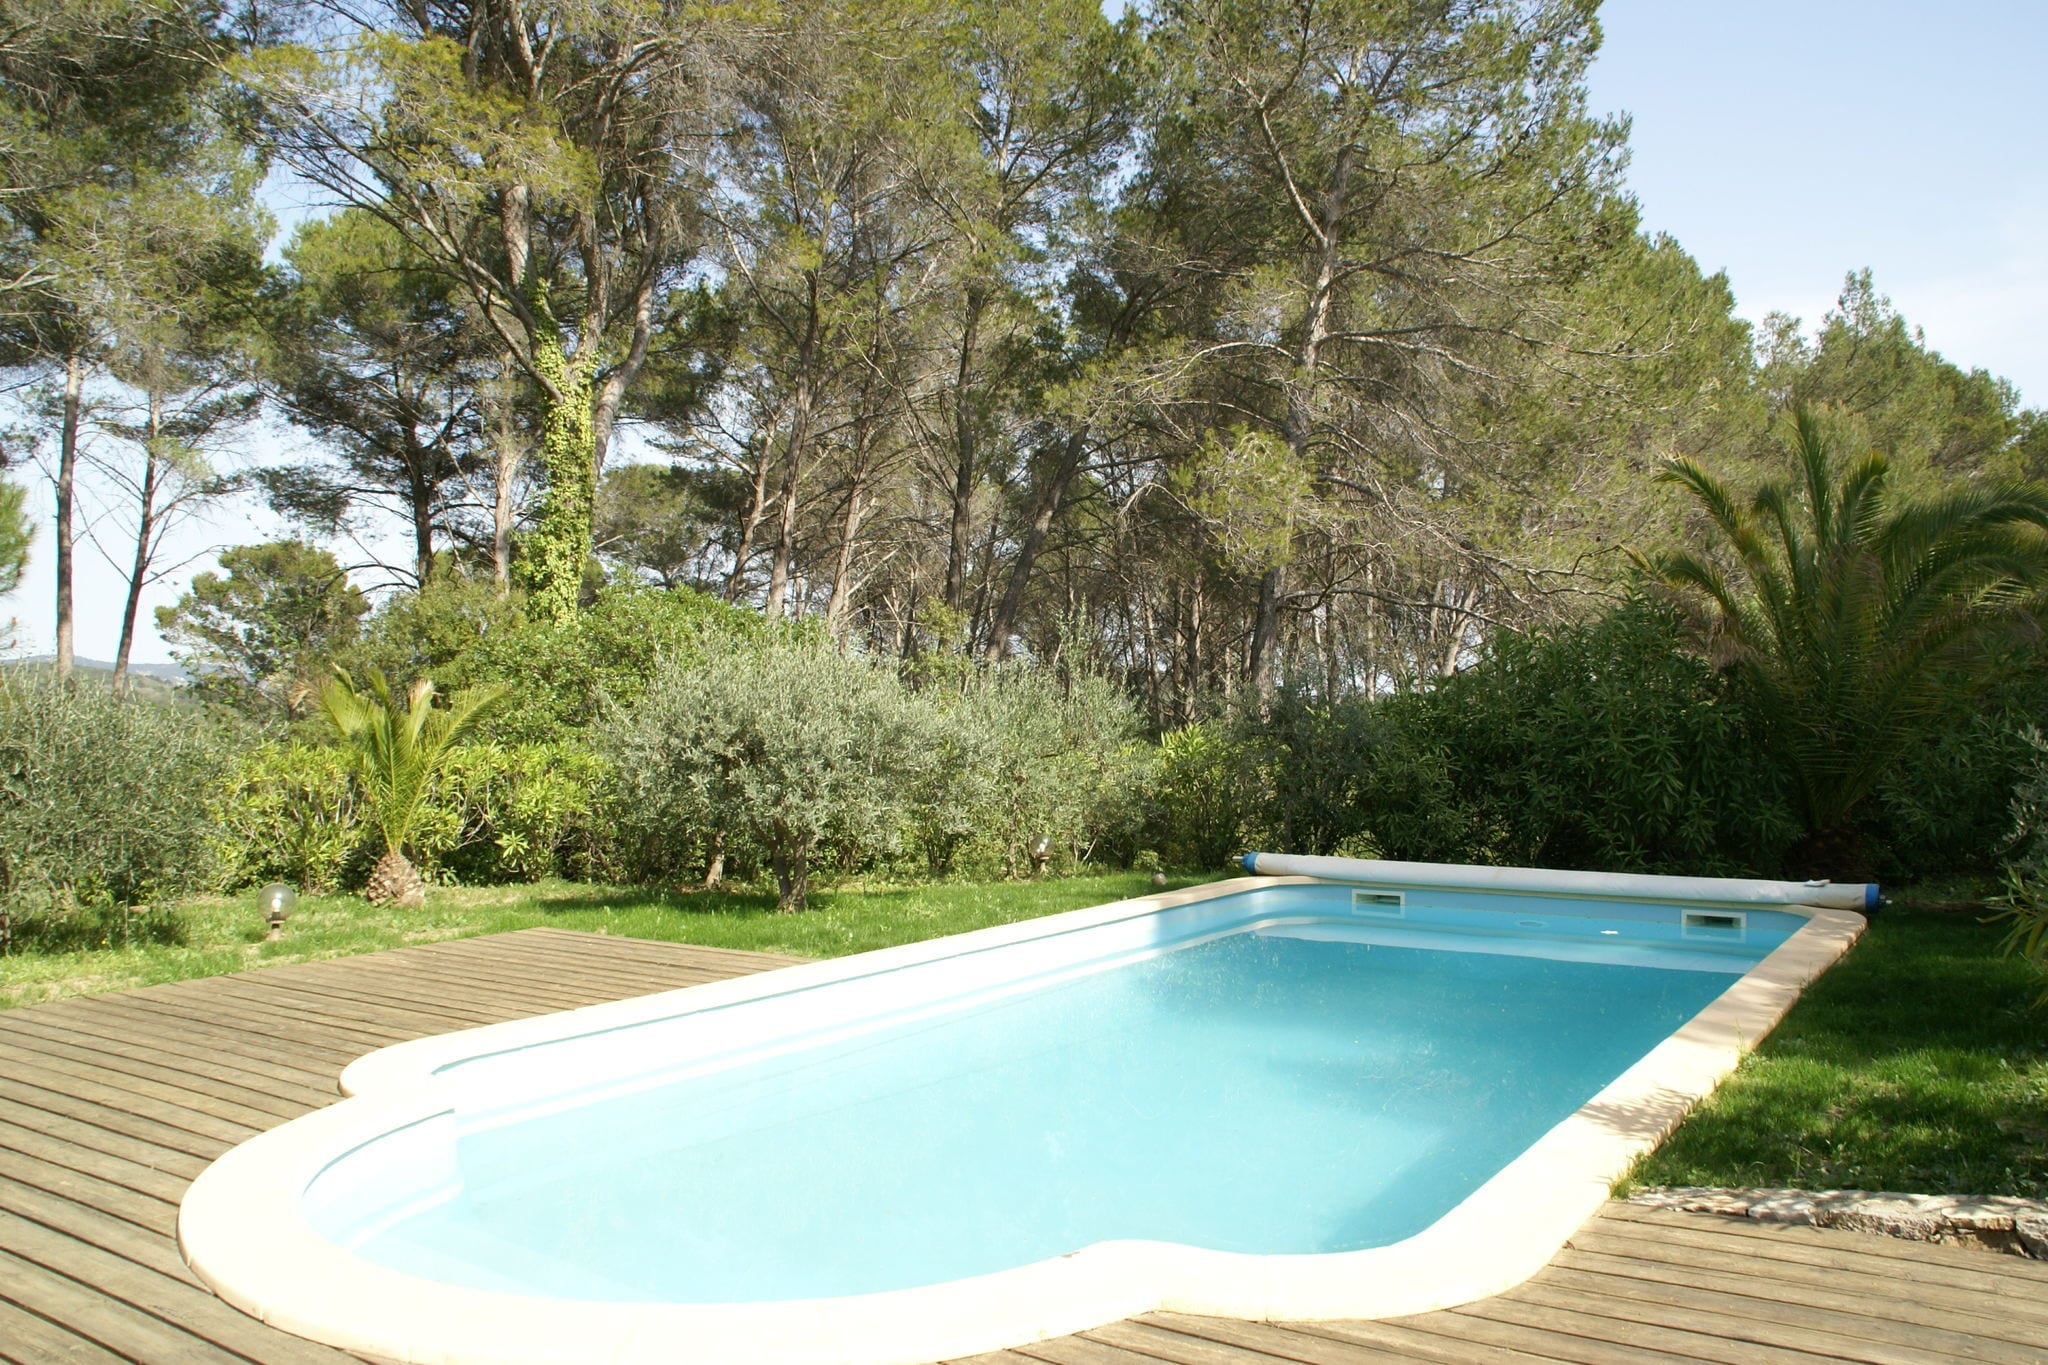 Fijn vakantiehuis in de Var met zwembad, veel privacy en mooie grote tuin!